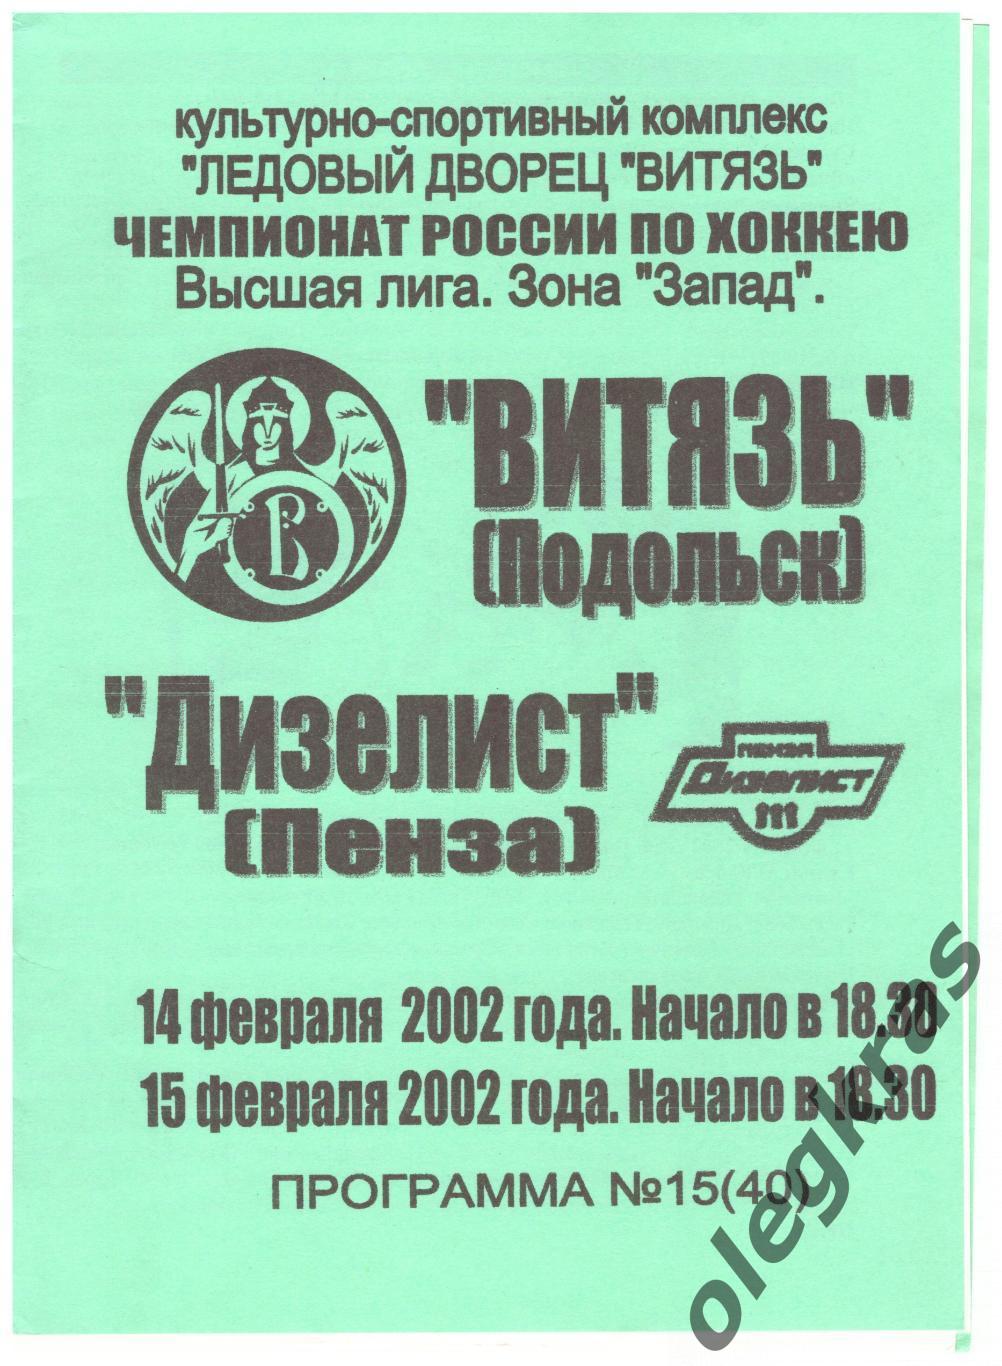 Витязь(Подольск) - Дизелист(Пенза) - 14-15 февраля 2002 года.